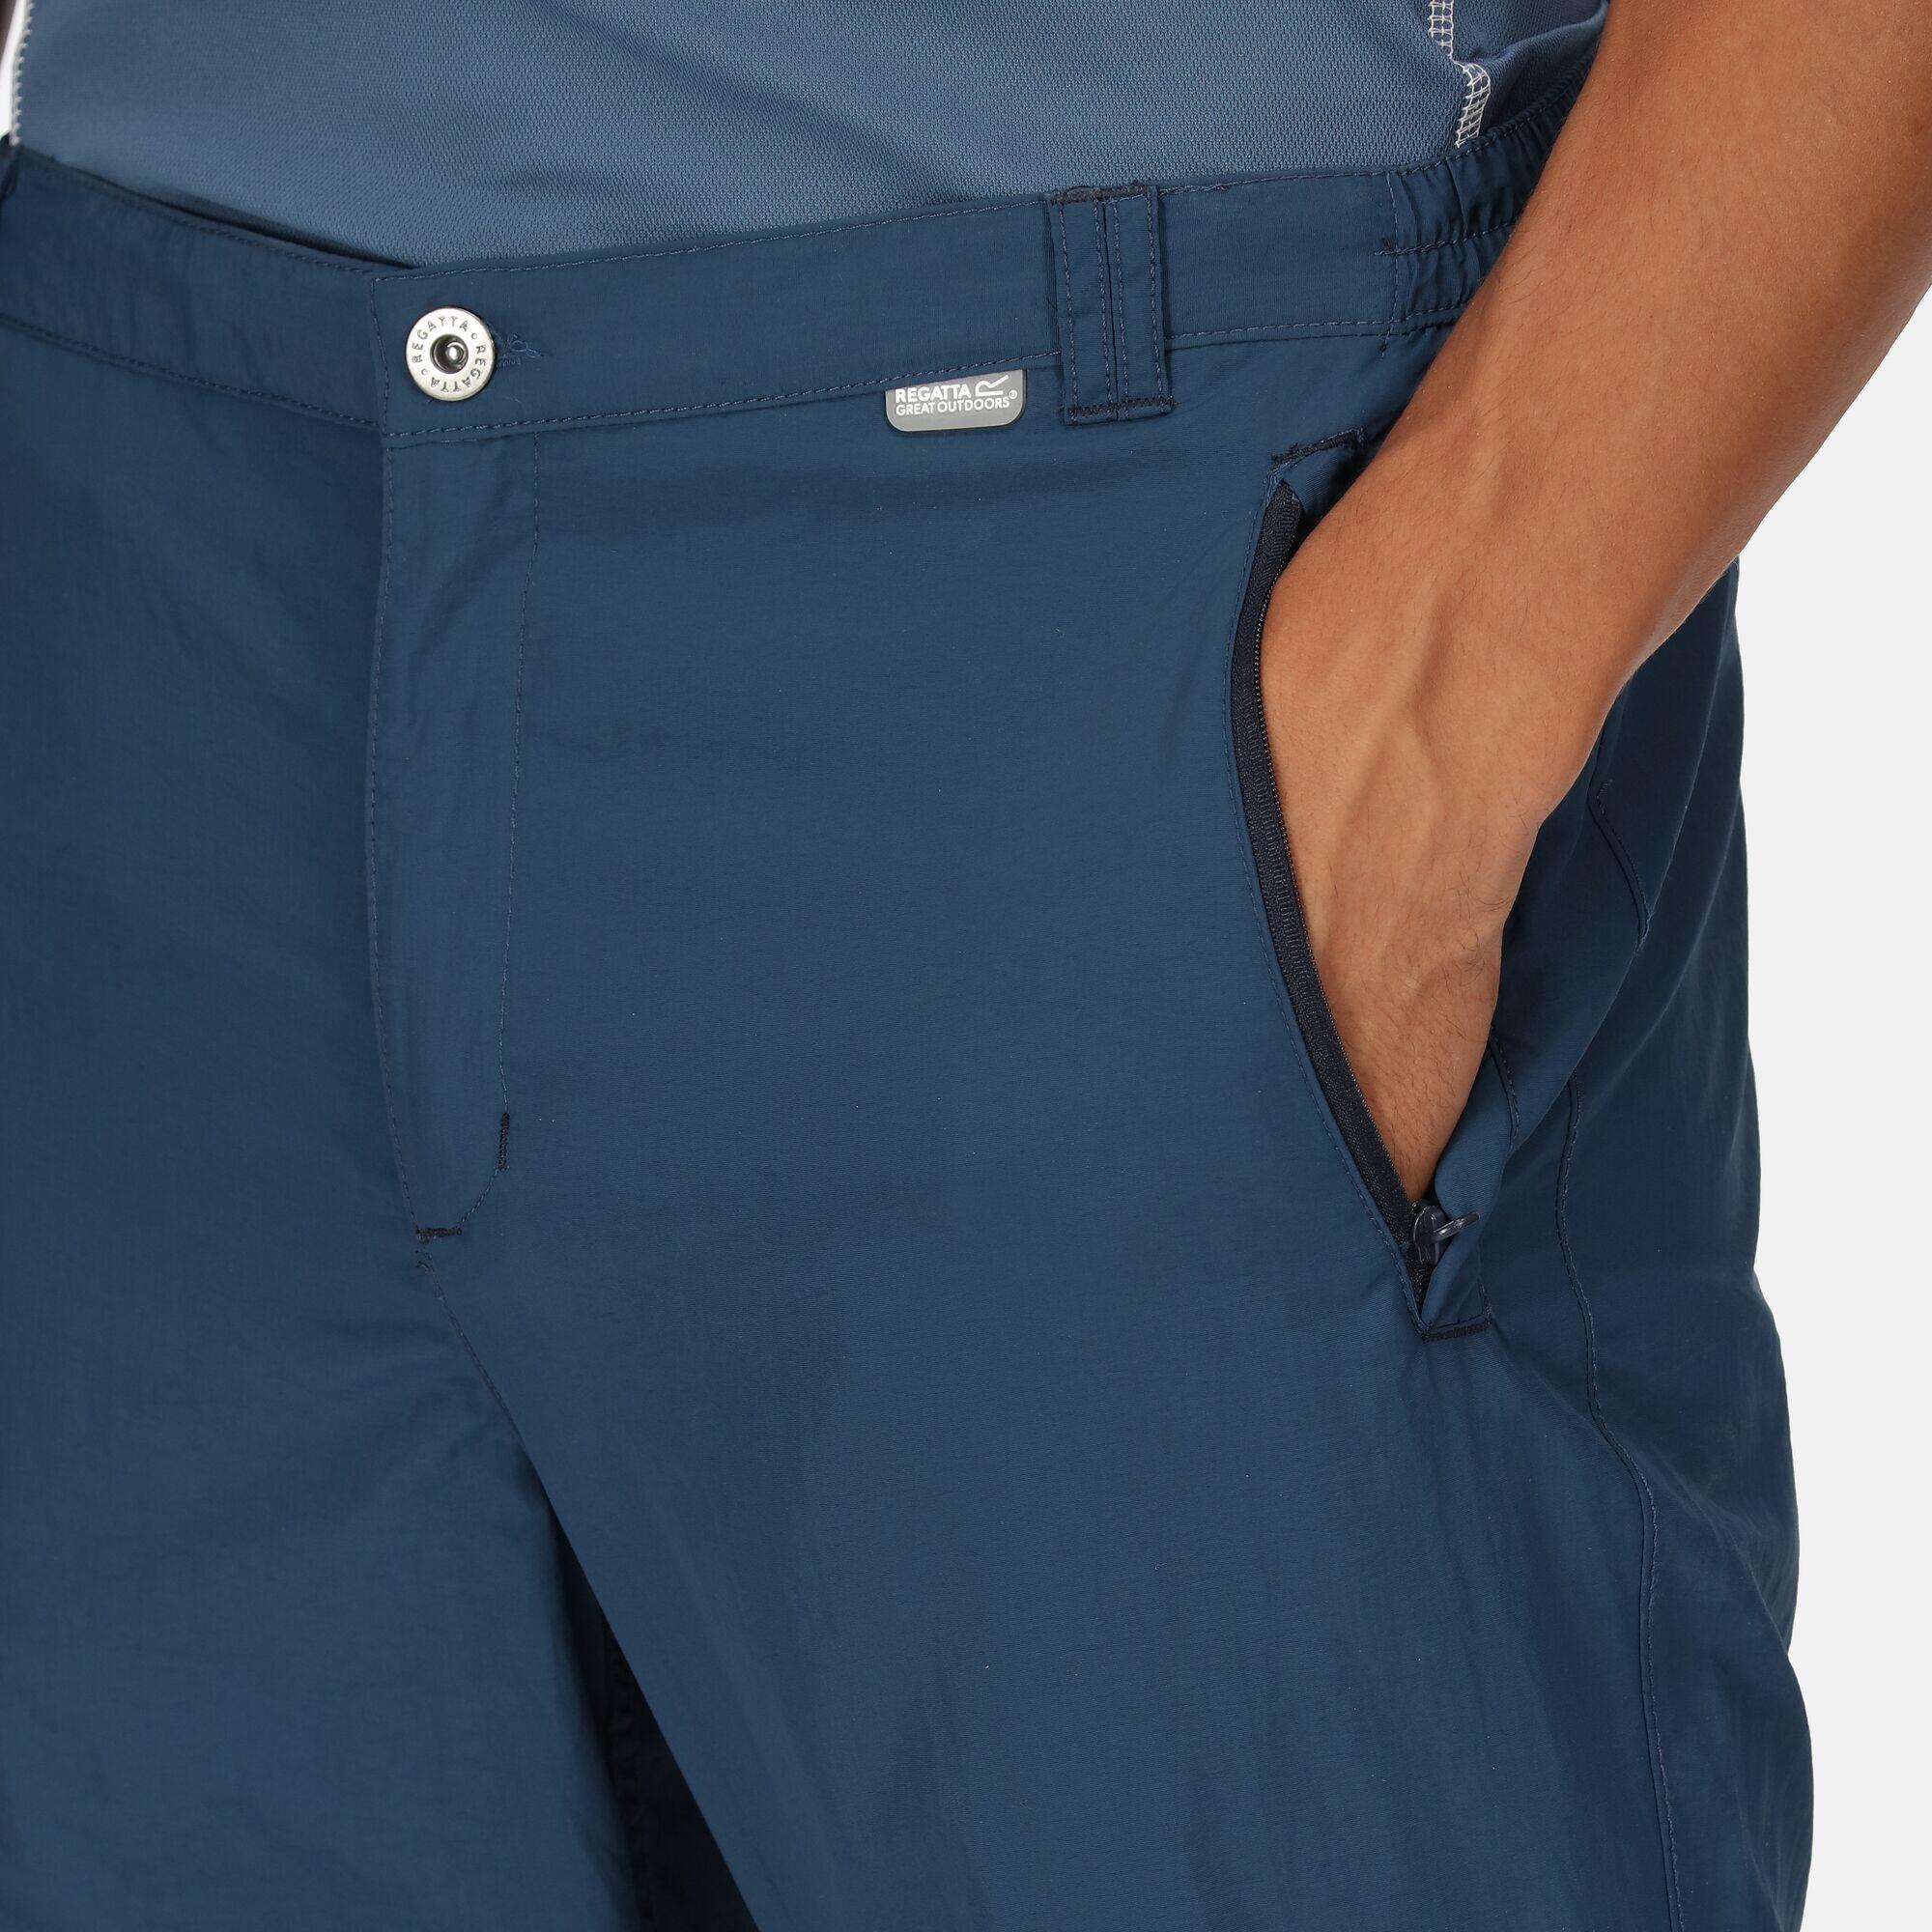 Men's Leesville II Zip Off Walking Trousers 4/5